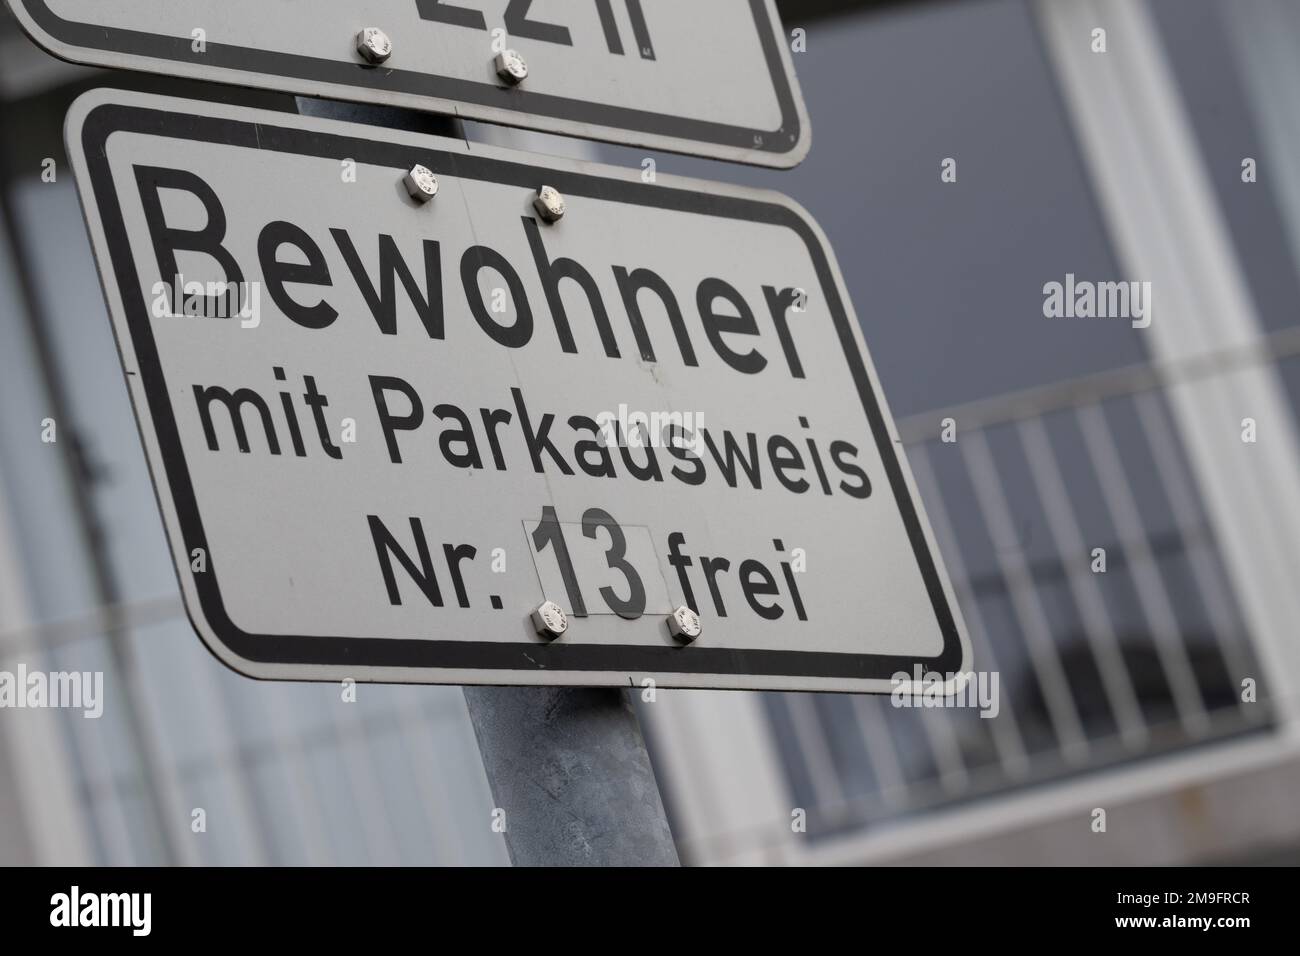 06. Januar 2023, Hessen, Frankfurt/Main: CBewohner mit Parkausweis Nr. 13 Free steht auf einem Schild in einer Zone mit Parkplätzen. Foto: Sebastian Gollnow/dpa Stockfoto